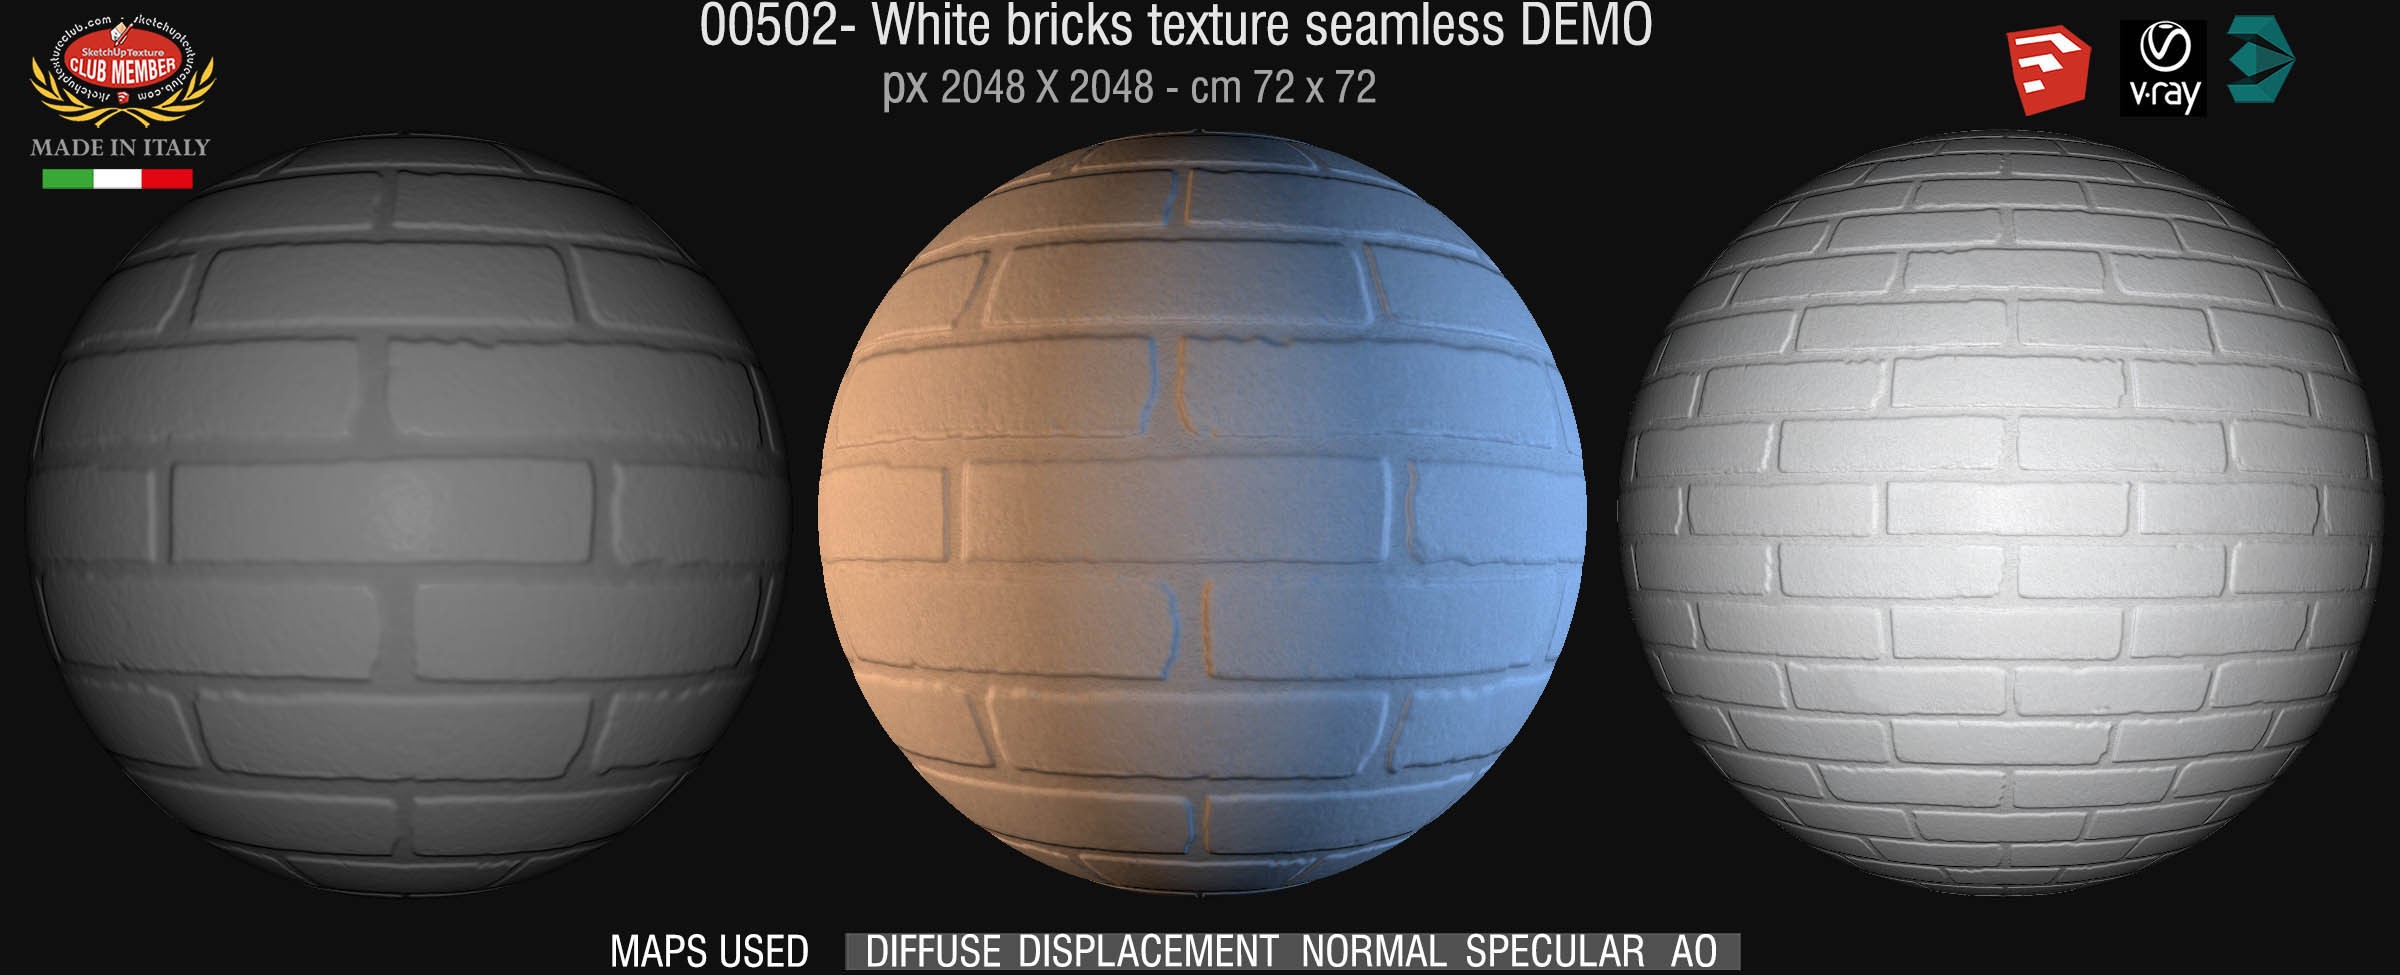 00502 White bricks texture seamless + maps DEMO